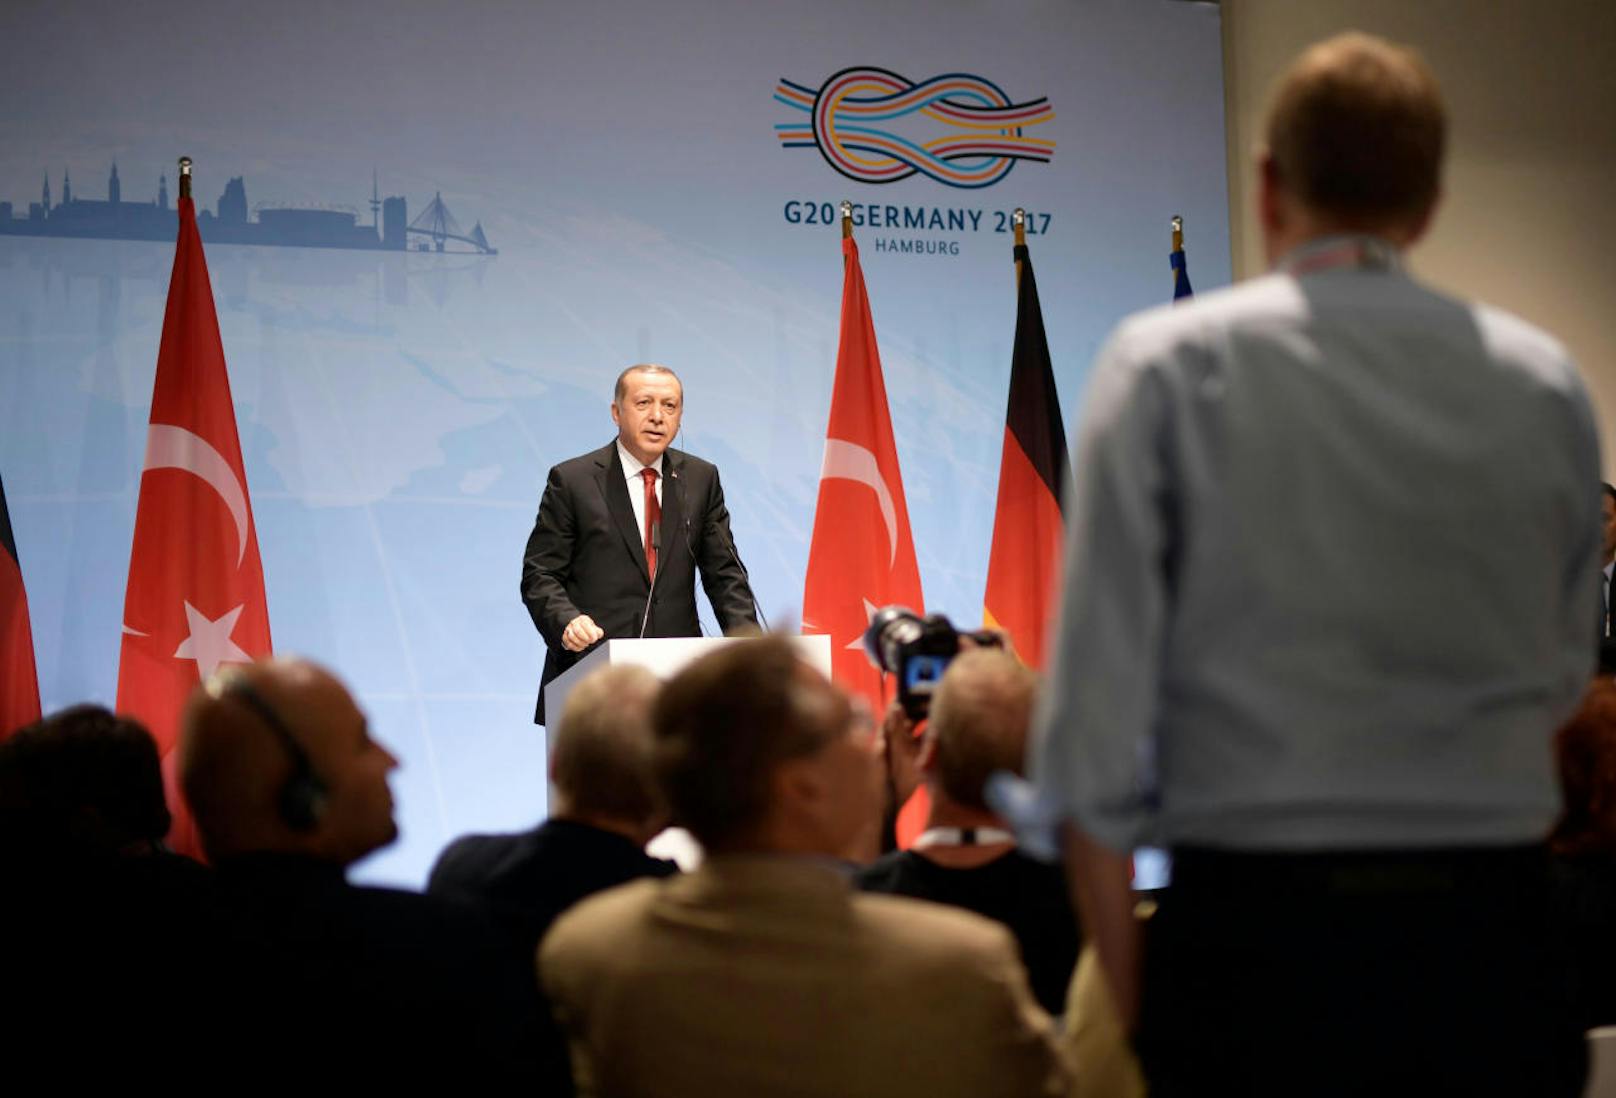 Der türkische Präsident Recep Tayyip Erdogan bei seiner Abschlussrede am G20-Gipfel in Hamburg.